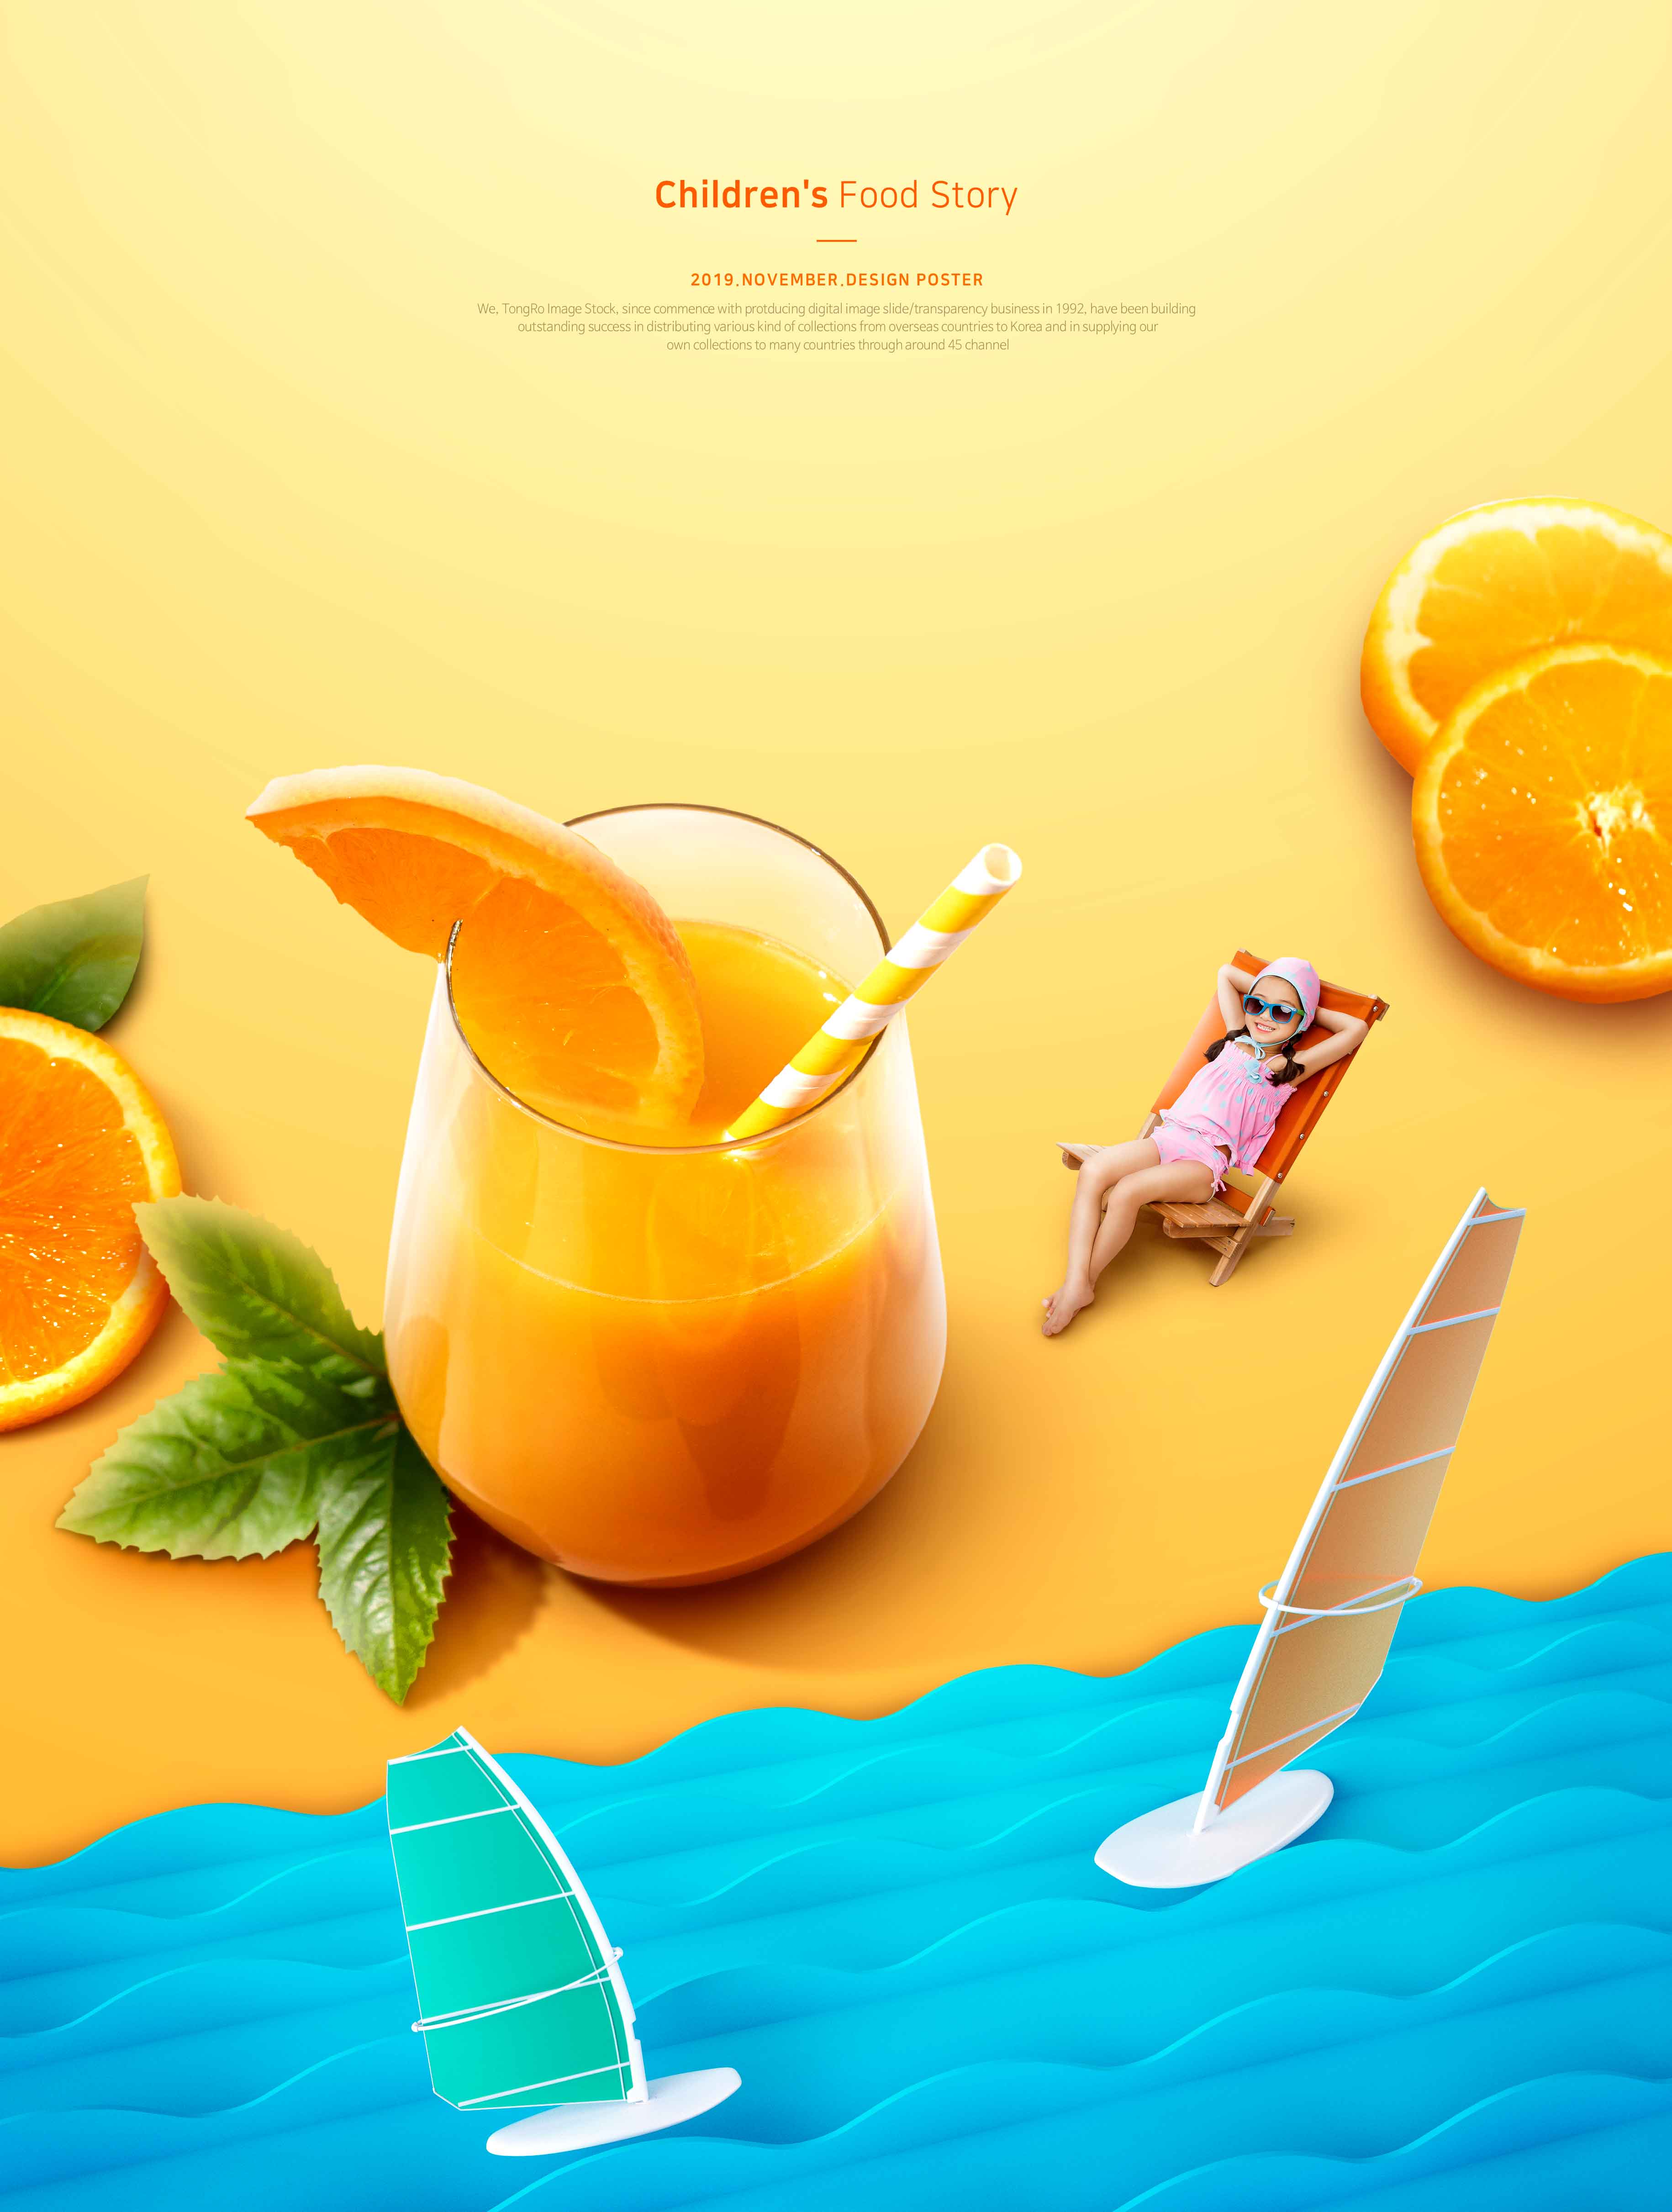 儿童食品故事夏季橙汁推广海报PSD素材素材库精选模板插图